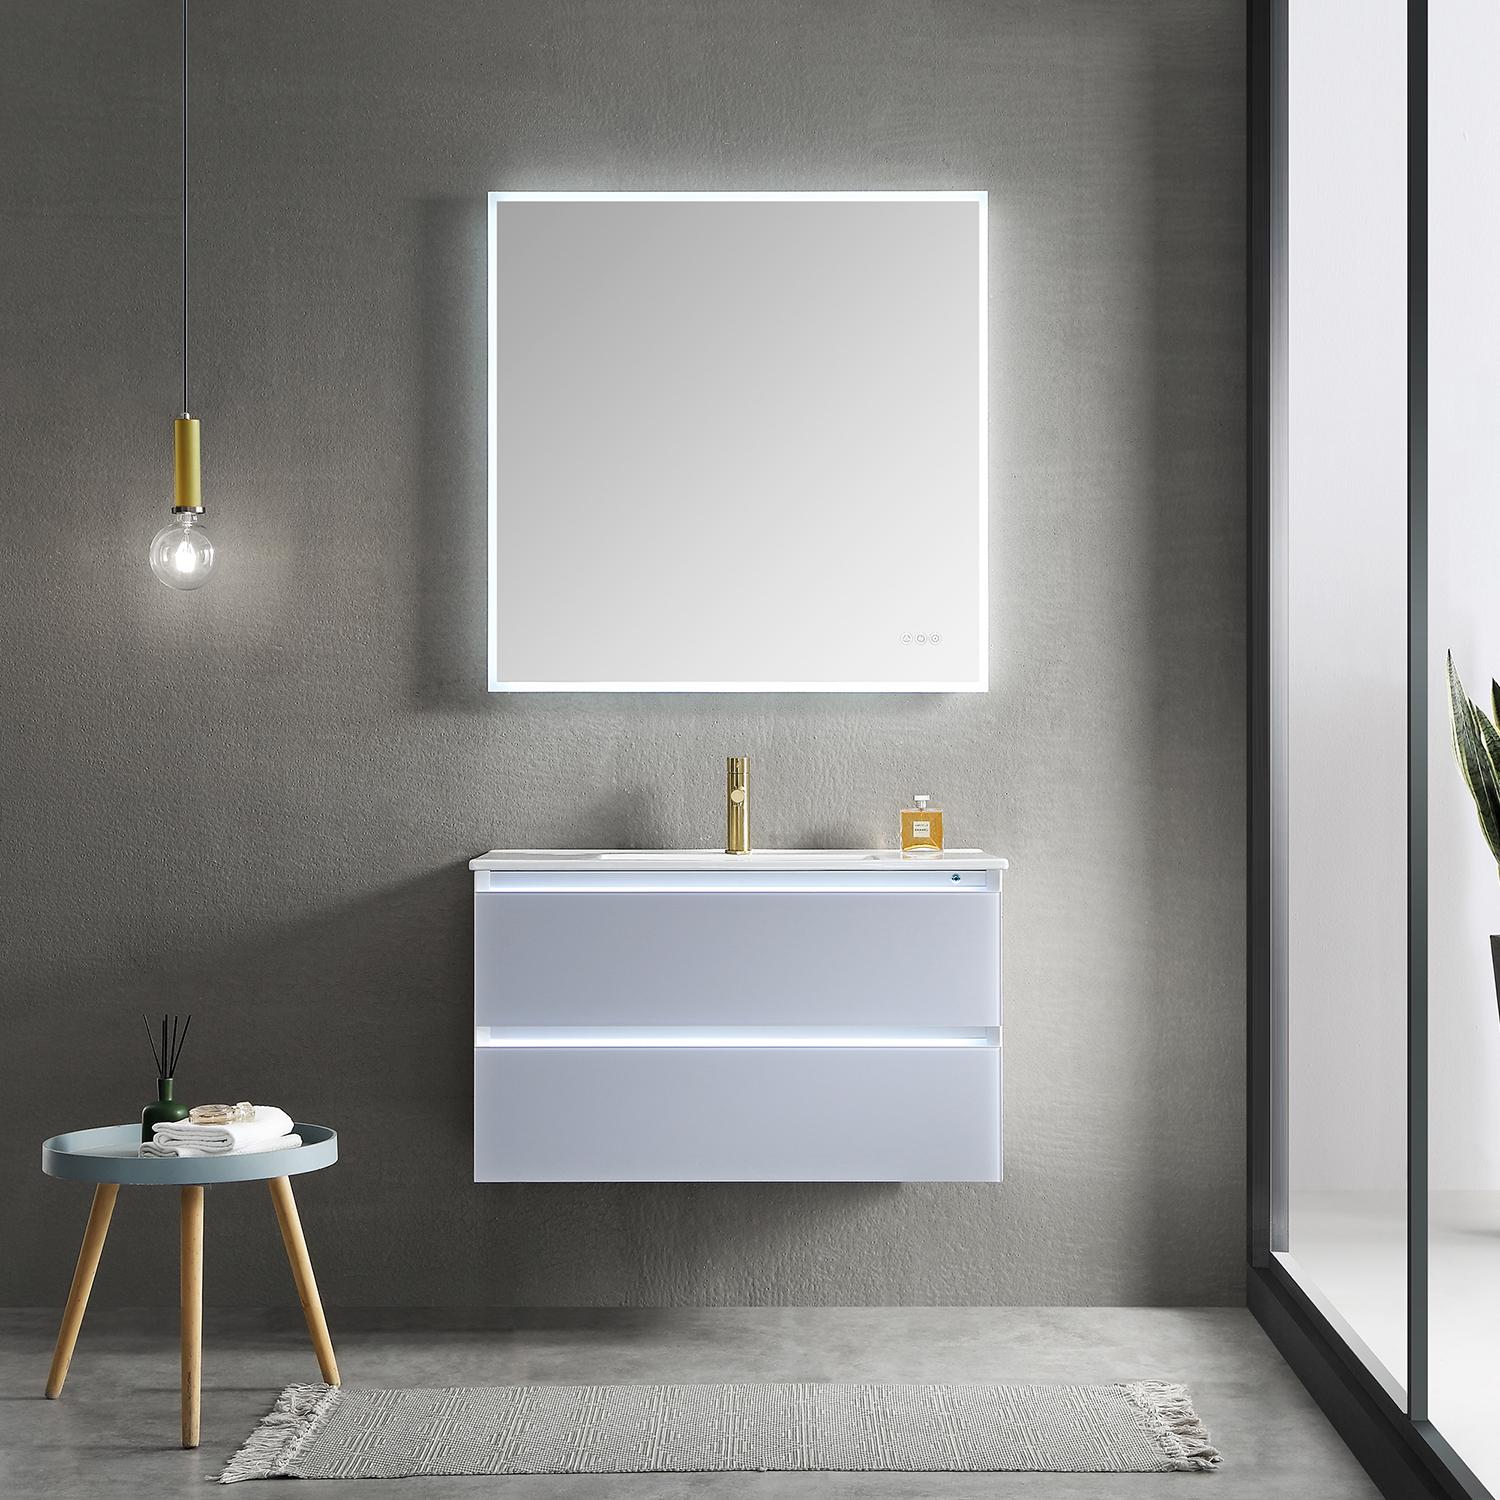 Jena 36" Bathroom Vanity with Acrylic Top - Luxury Bathroom Vanity